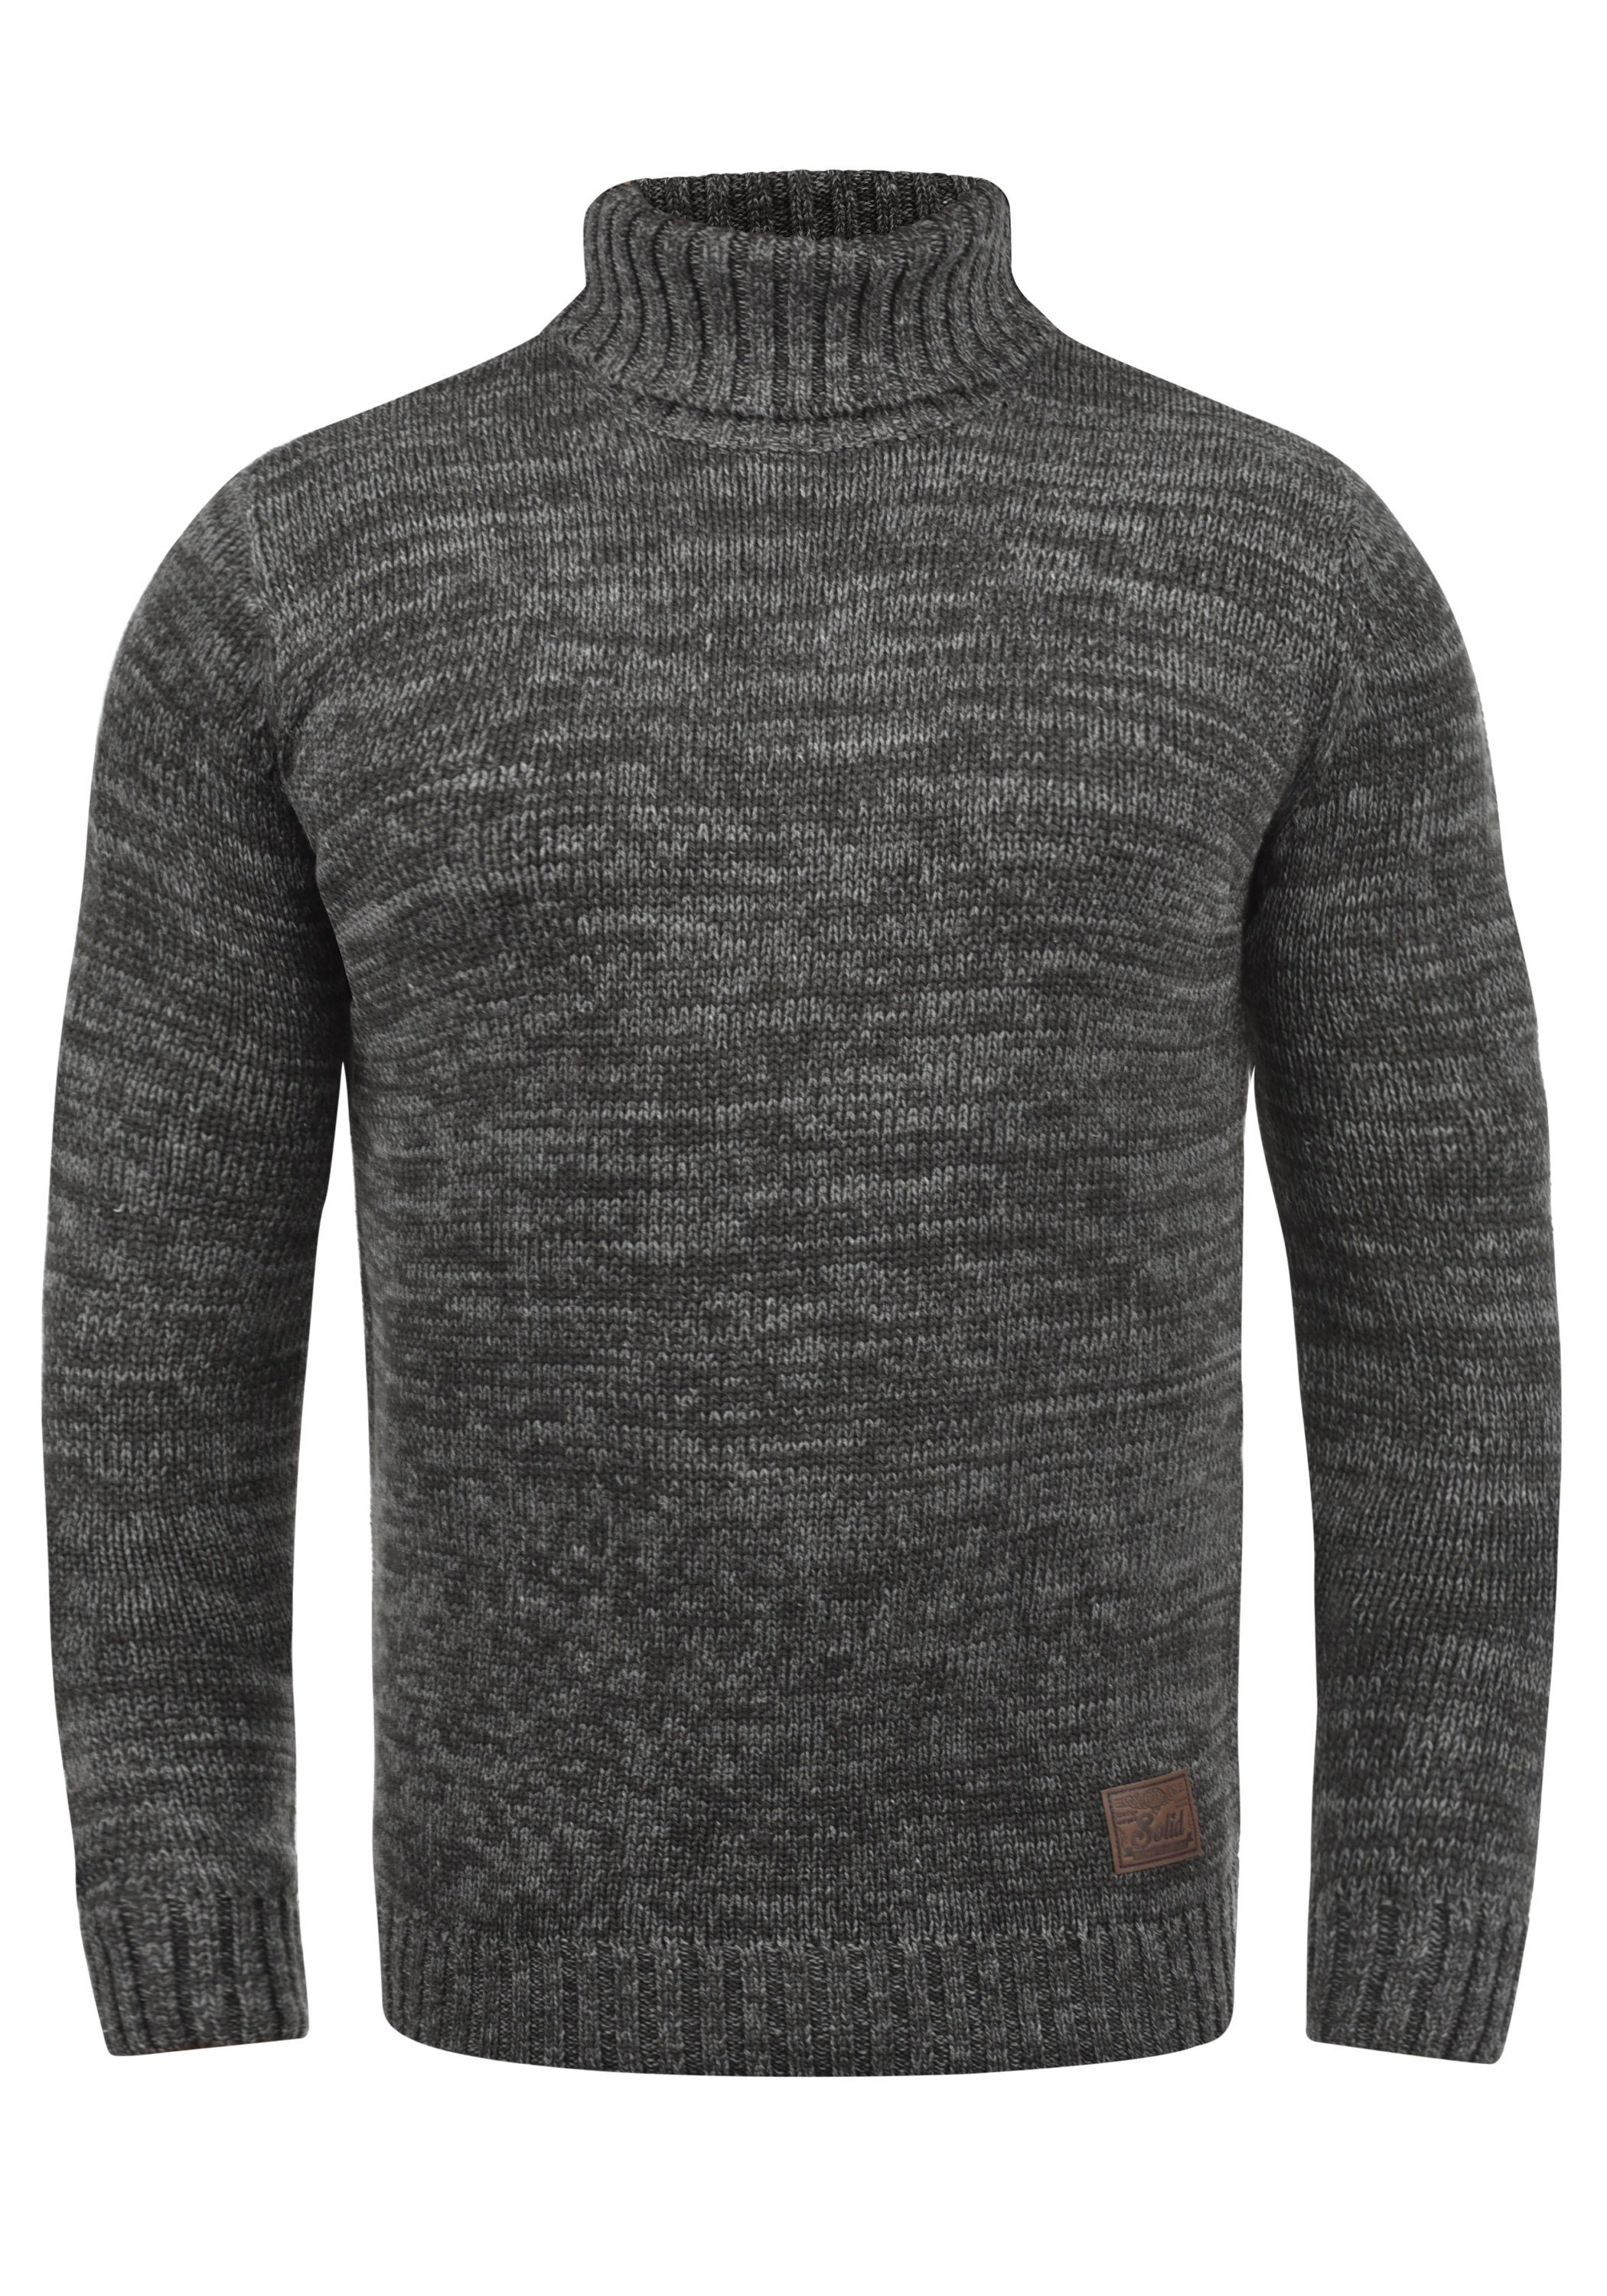 Solid Herren-Pullover online kaufen | OTTO